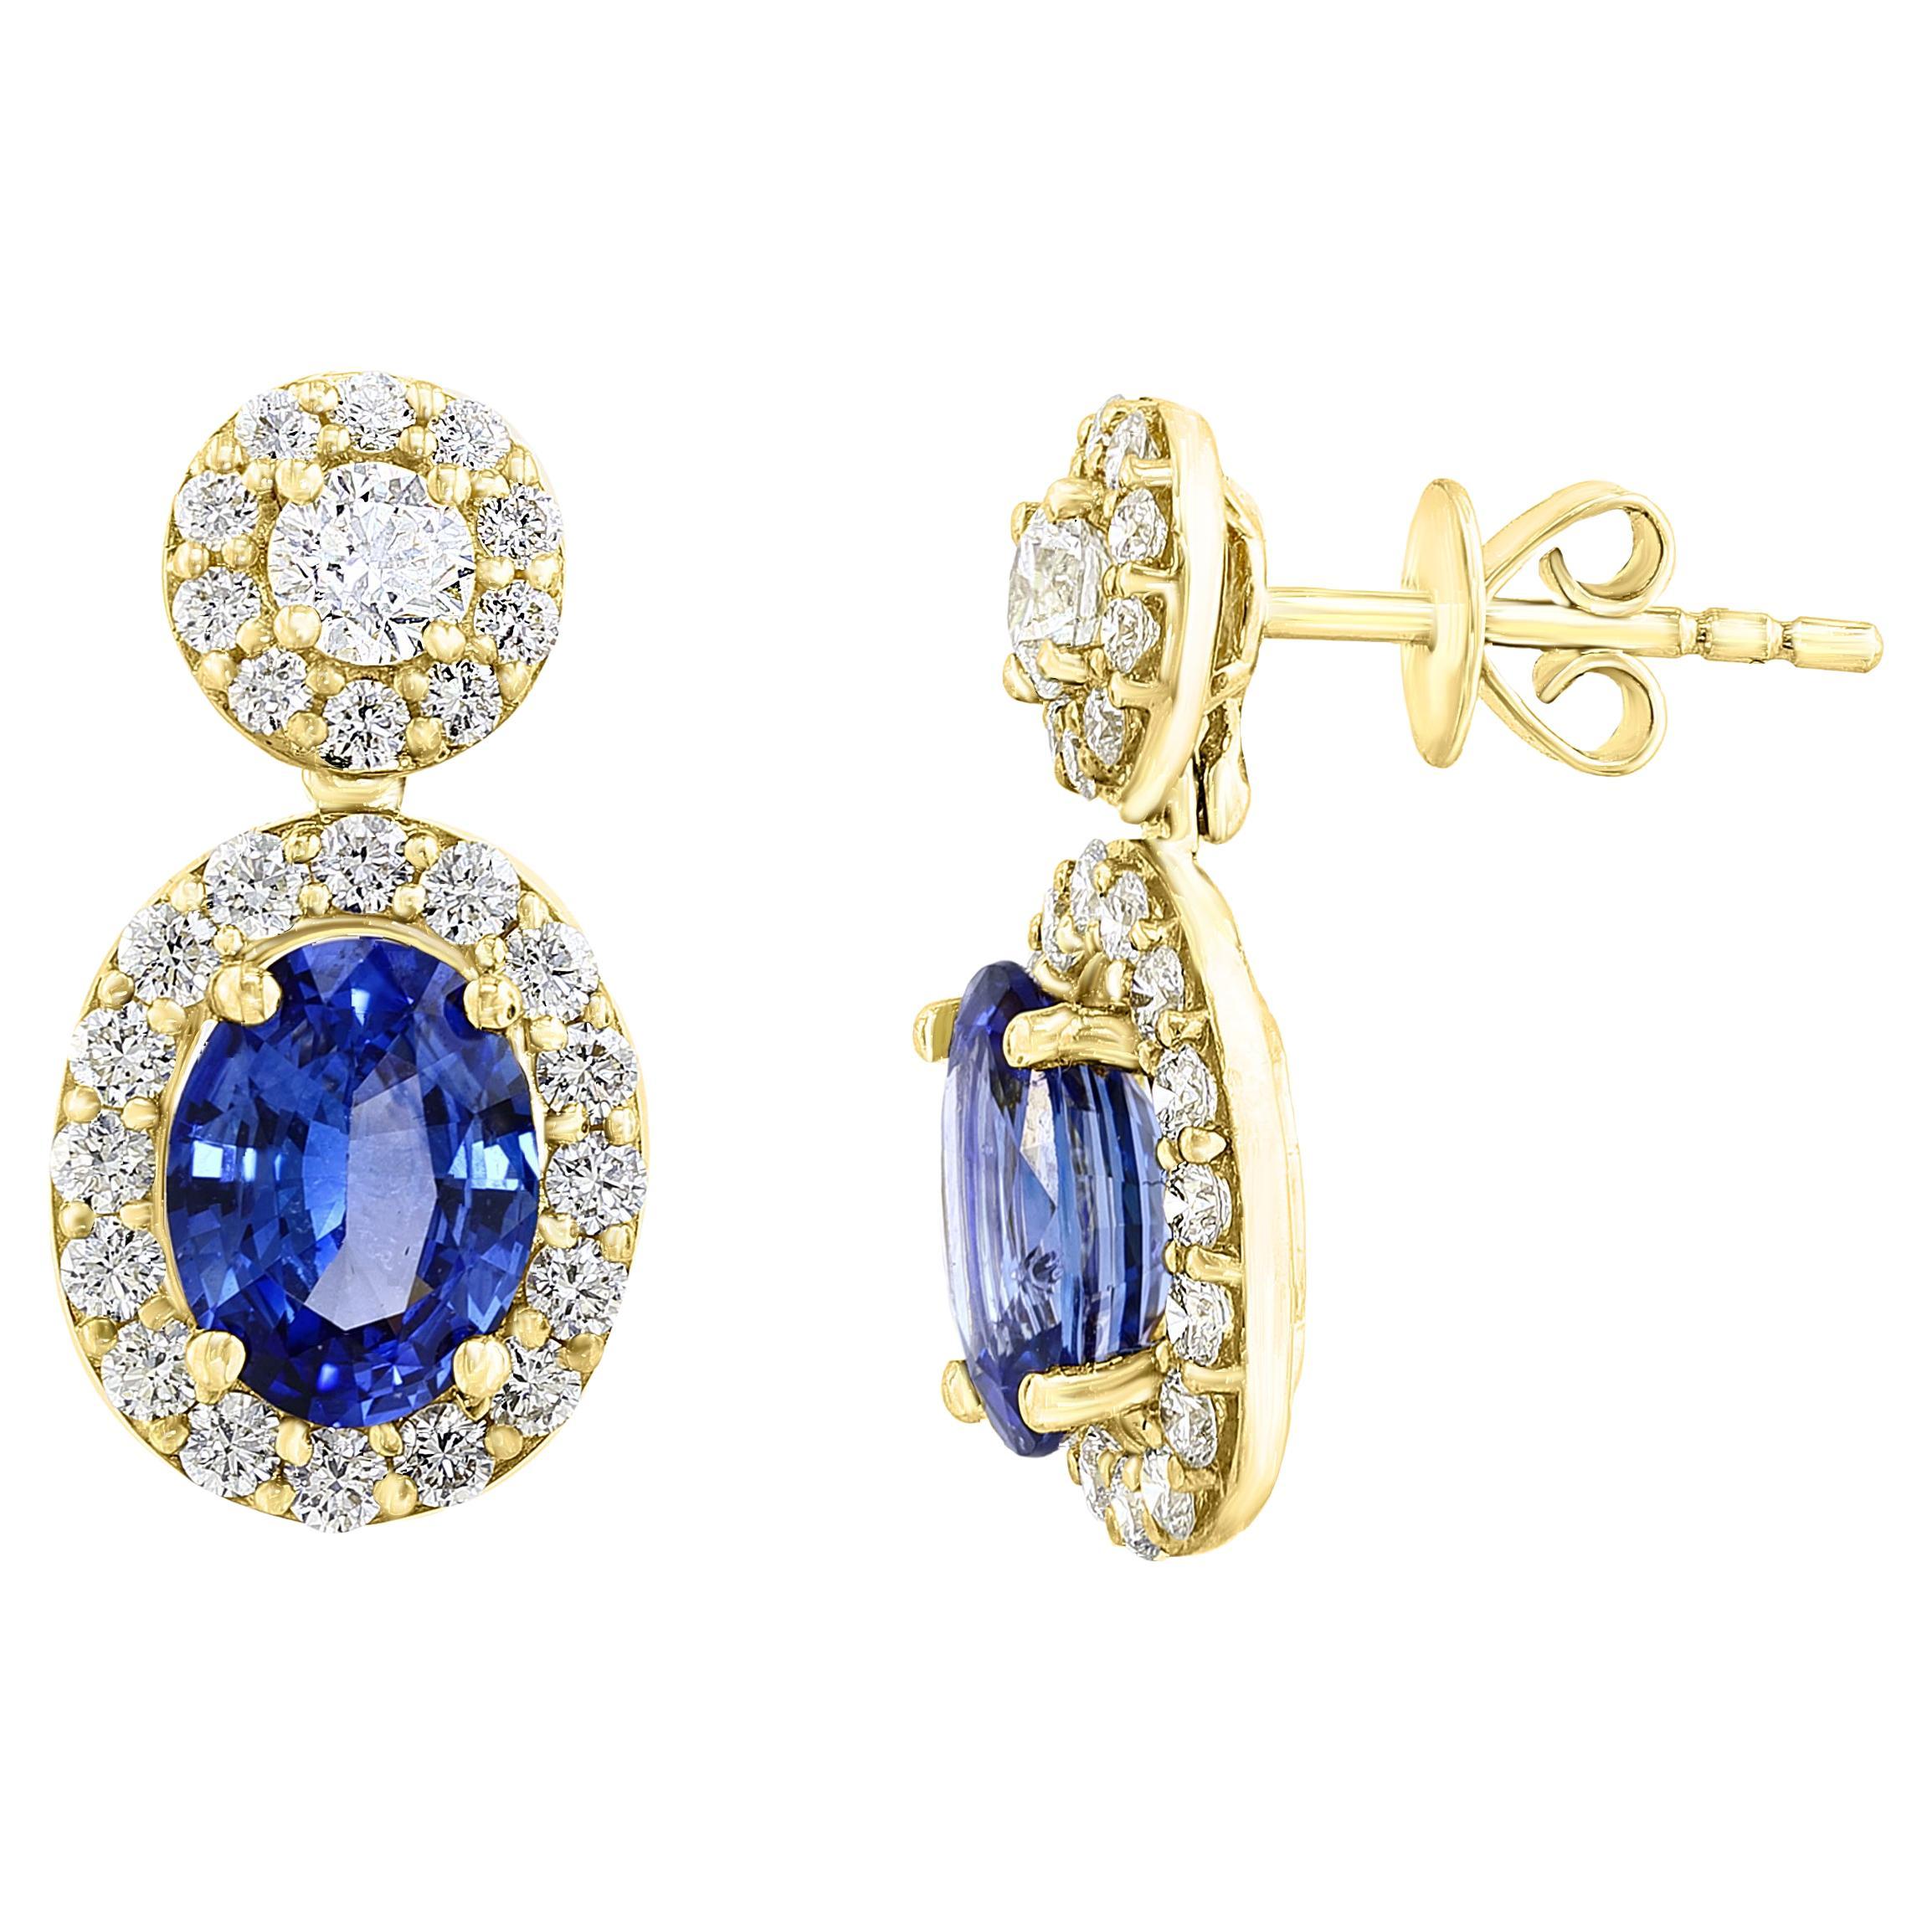 3.04 Carat of Oval Shape Blue Sapphire Diamond Drop Earrings in 18K Yellow Gold For Sale